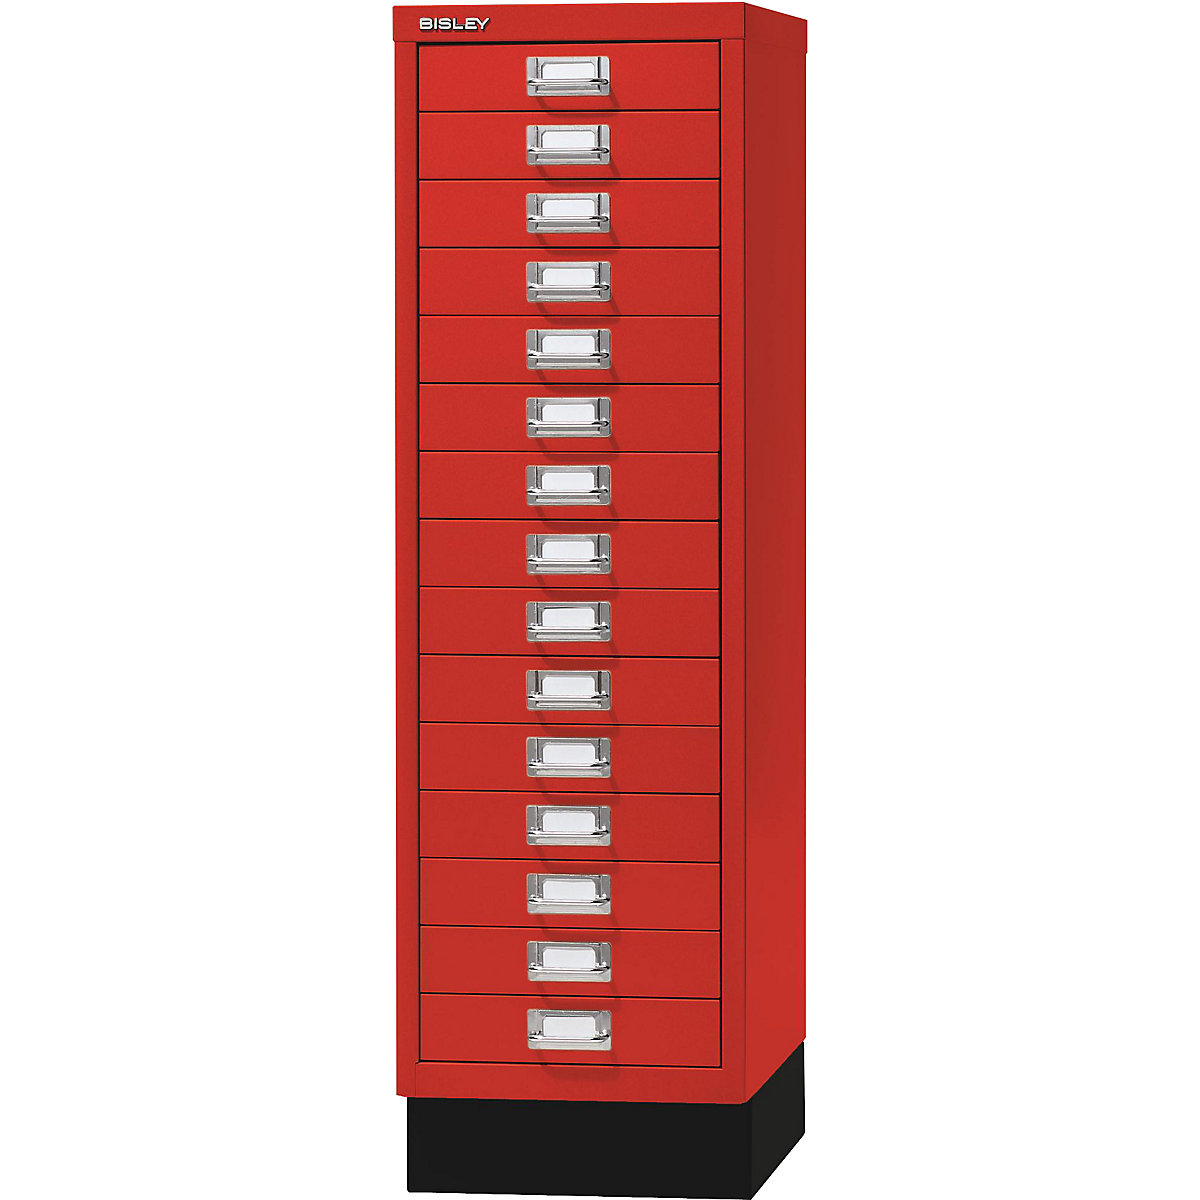 MultiDrawer™ 39. serija – BISLEY, s postoljem , DIN A4, 15 ladica, u kardinal crvenoj, crnoj boji-6